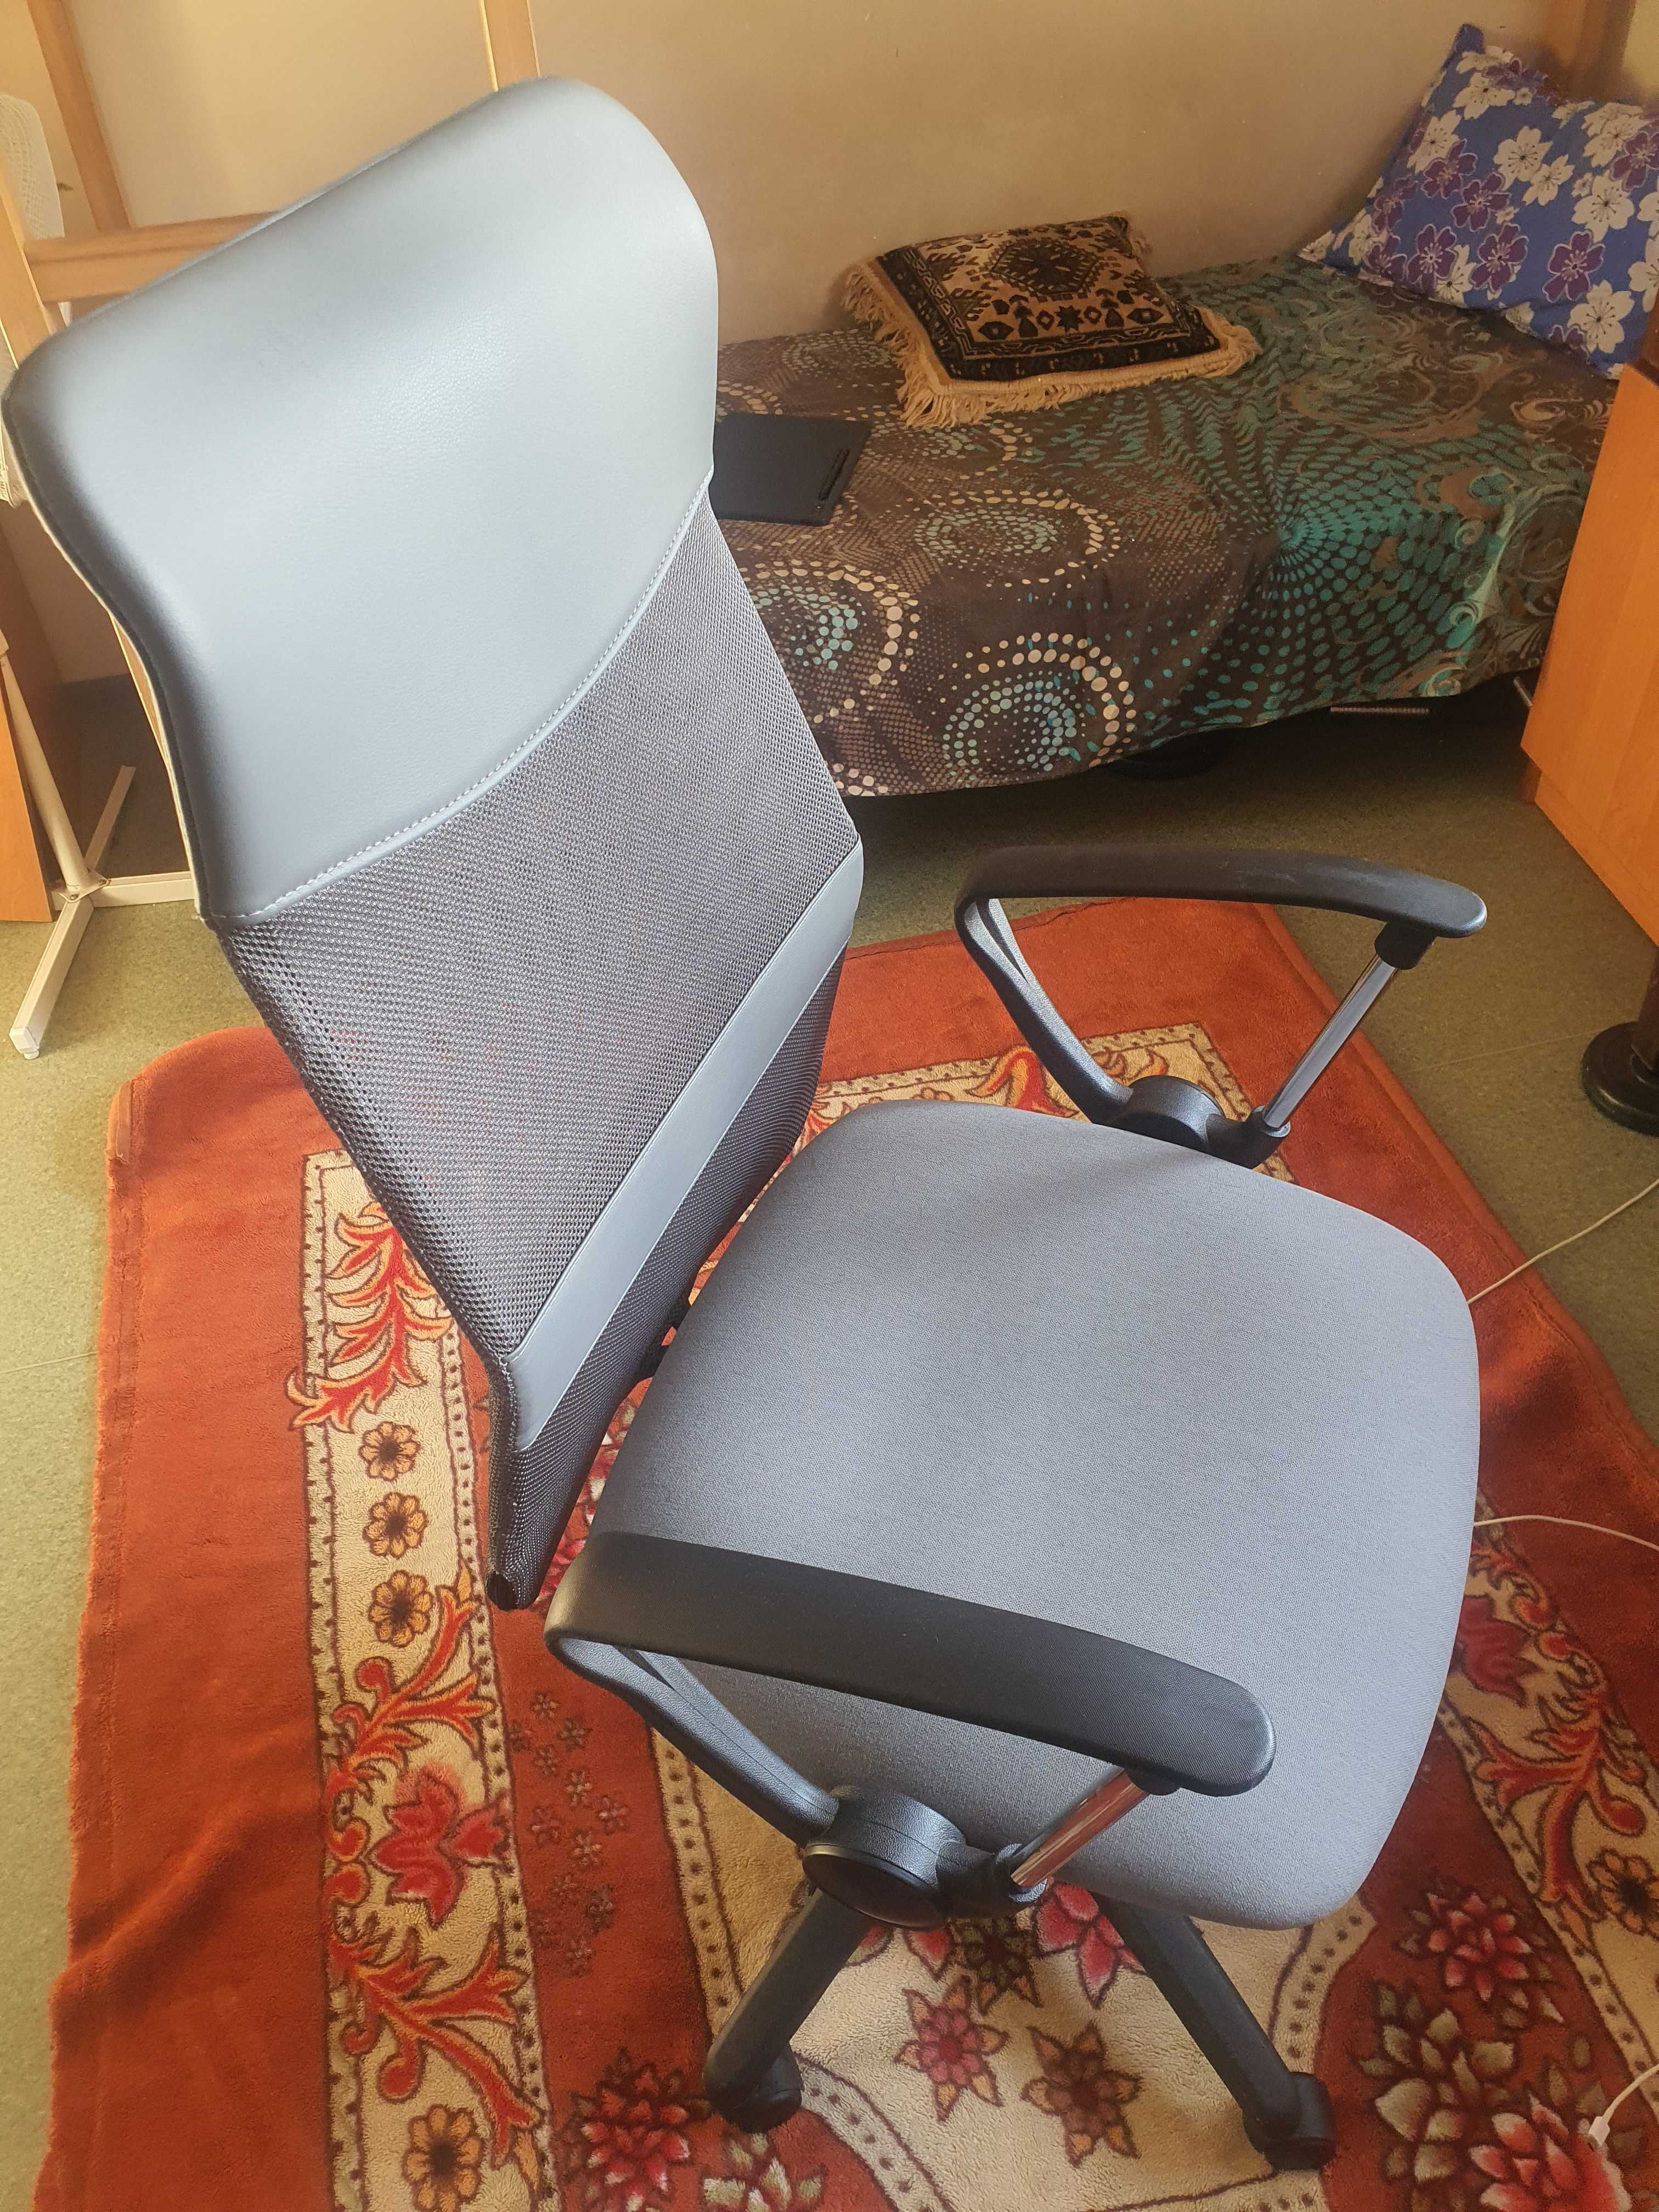 Нове офісне крісло з поперековою опорою для тривалого сидіння